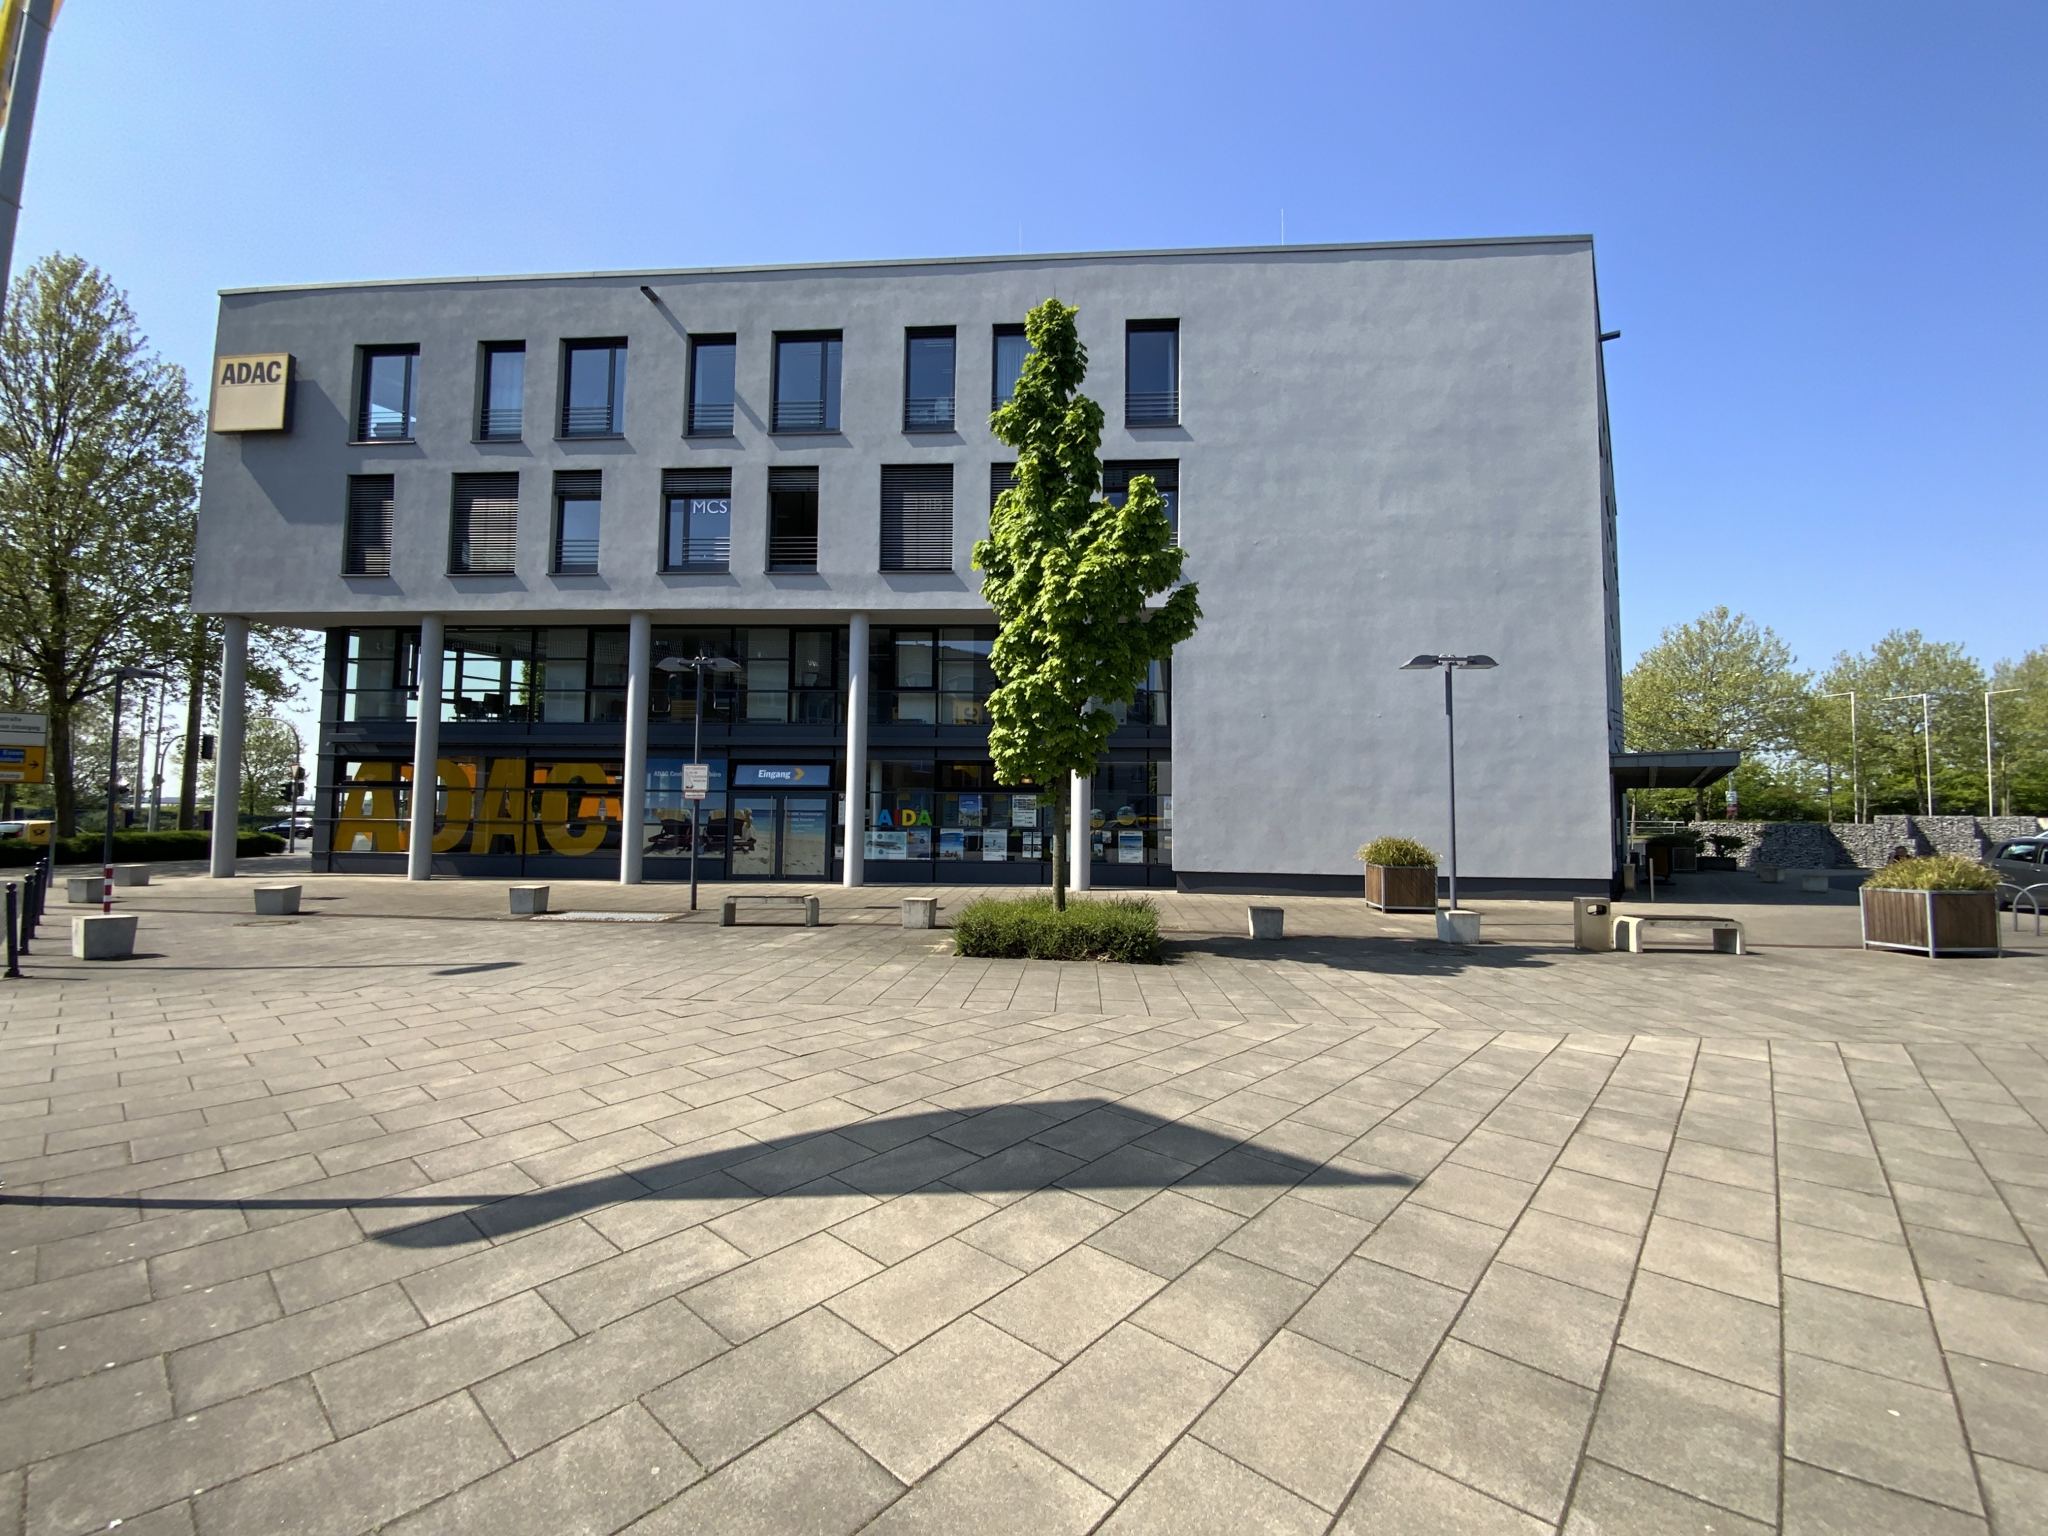 ADAC Center Mülheim an der Ruhr